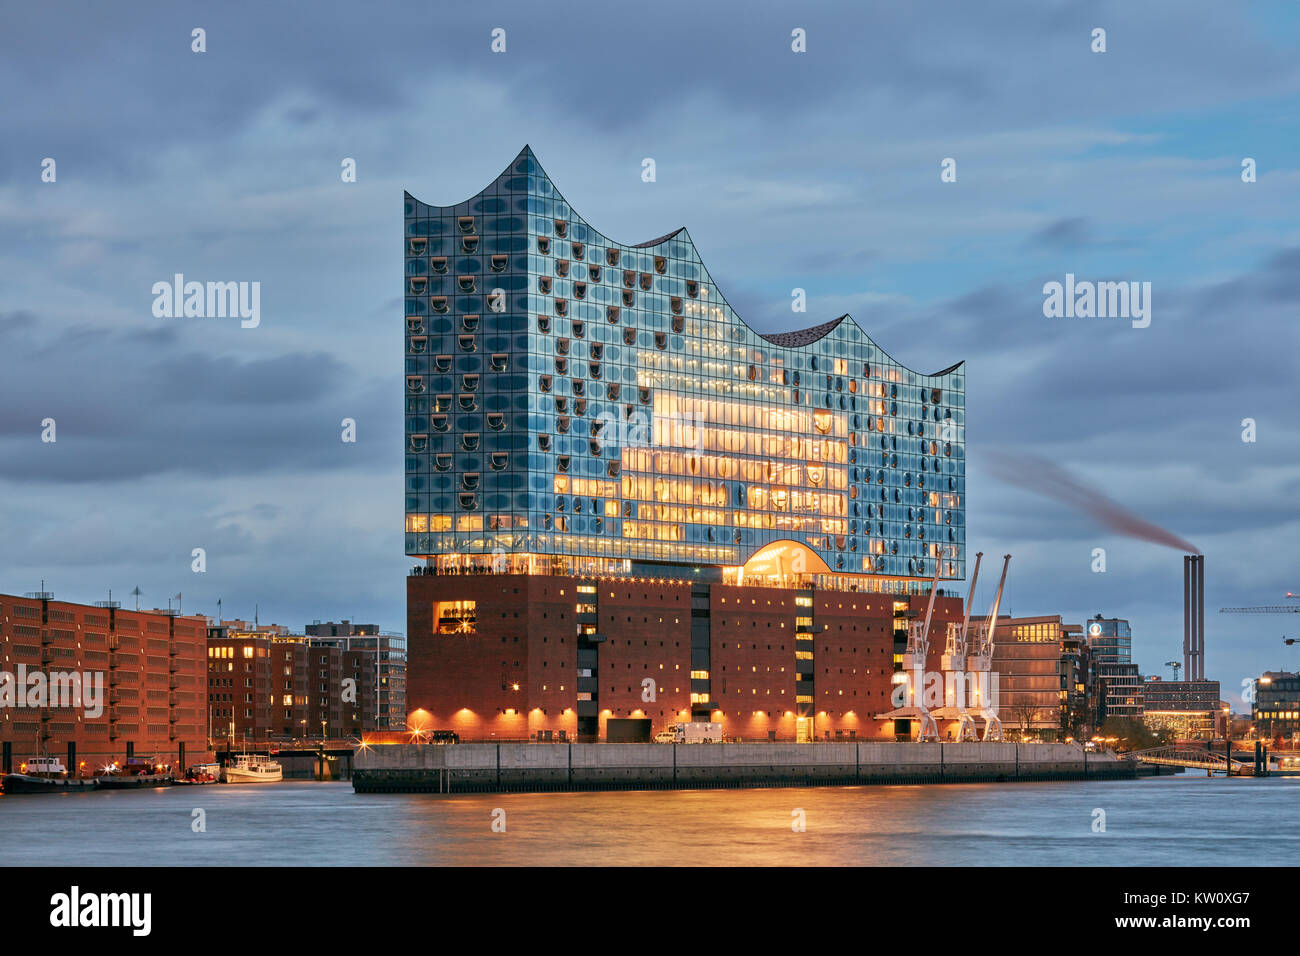 Elbphilharmonie, salle de concert par les architectes Herzog et de Meuron au bord du fleuve Elbe, HafenCity, Hambourg, Allemagne. Voir à l'aube. Banque D'Images